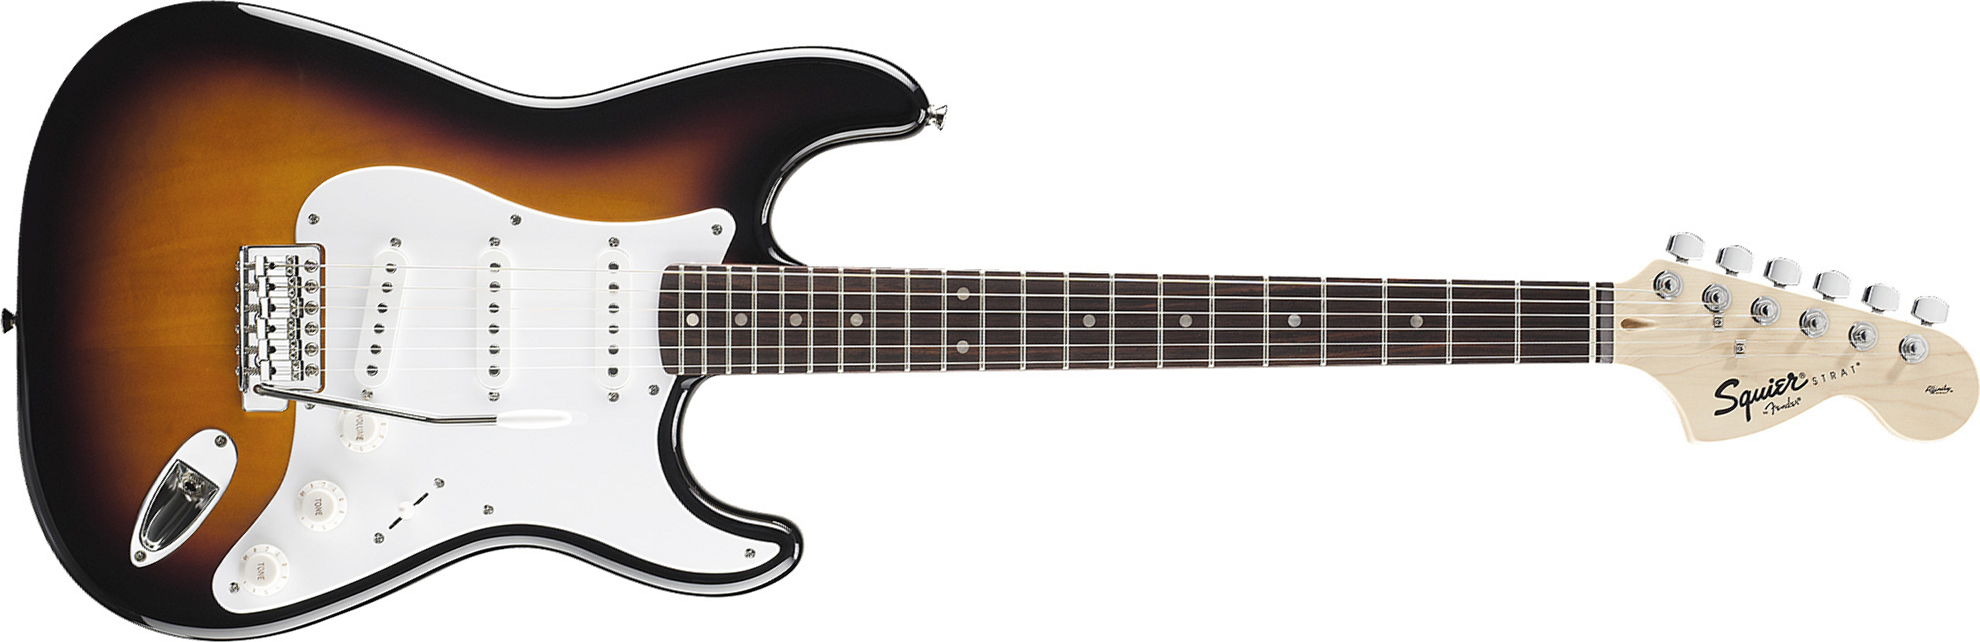 Squier Strat Affinity Series 3s Lau - Brown Sunburst - Guitarra eléctrica con forma de str. - Main picture